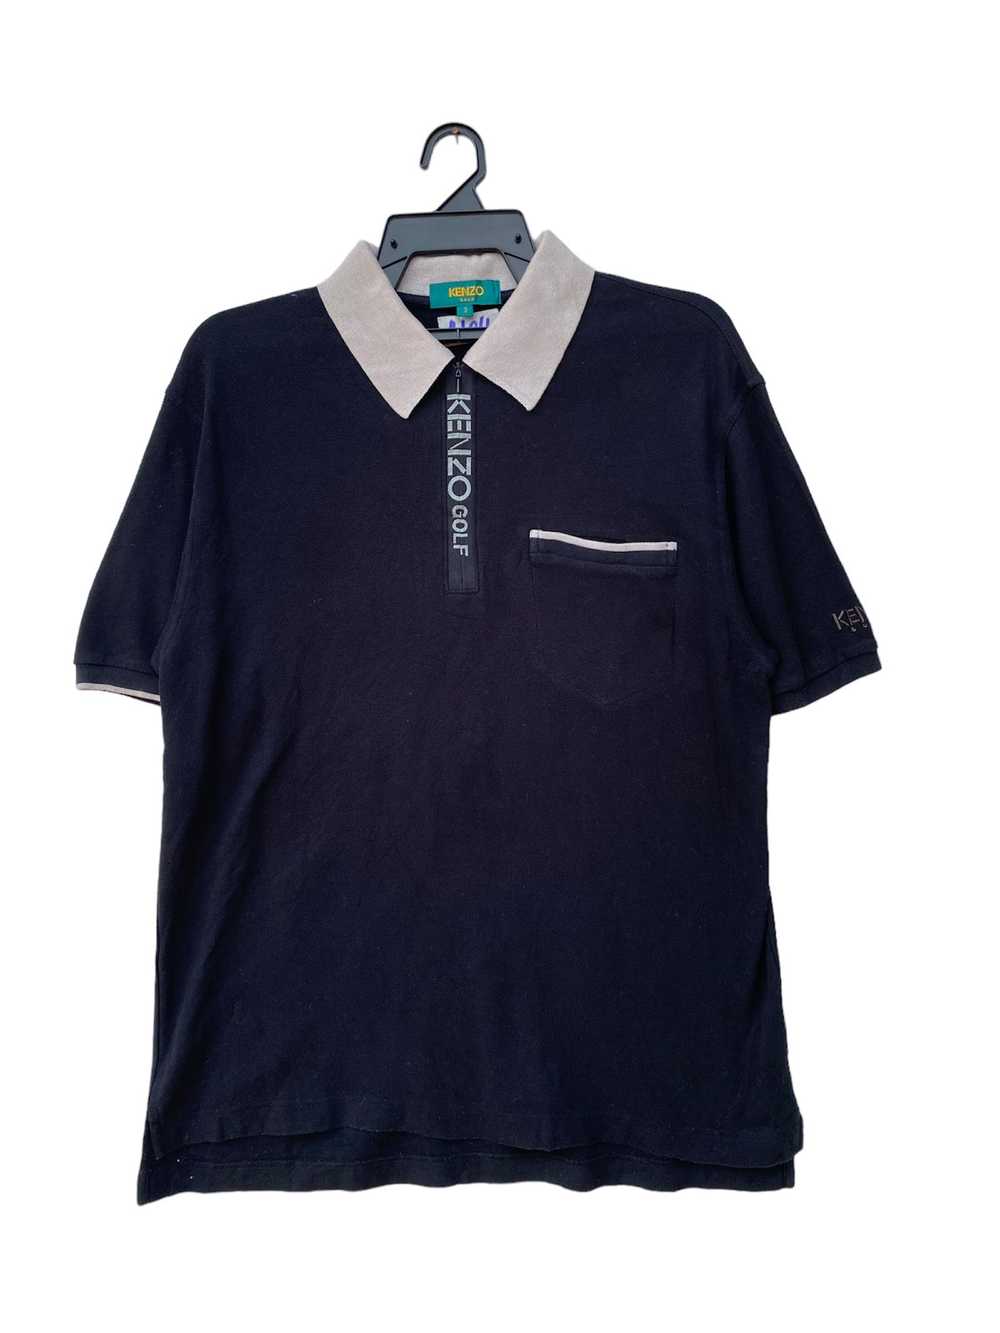 Kenzo × Vintage Kenzo Golf Polo shirt - image 1